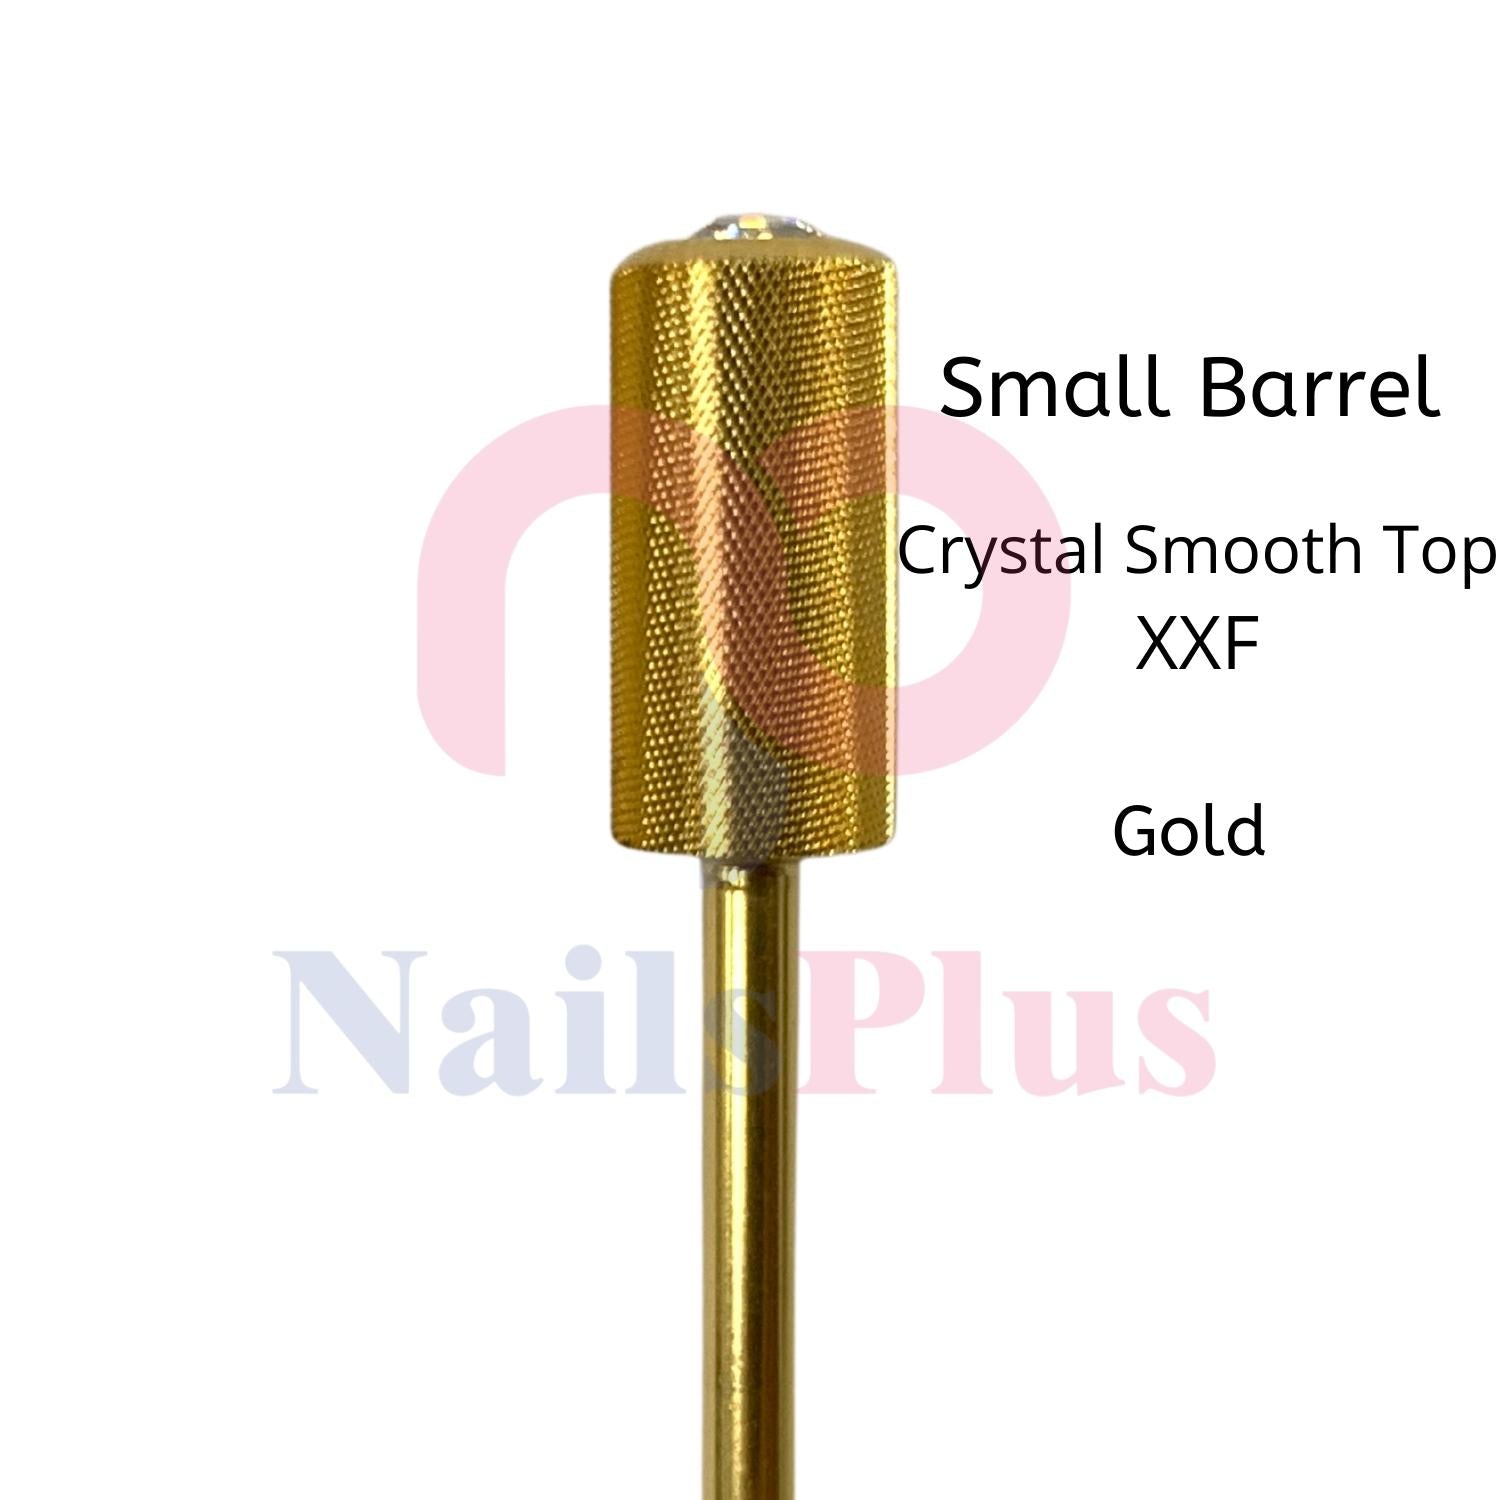 Small Barrel - Crystal Smooth Top - XXF